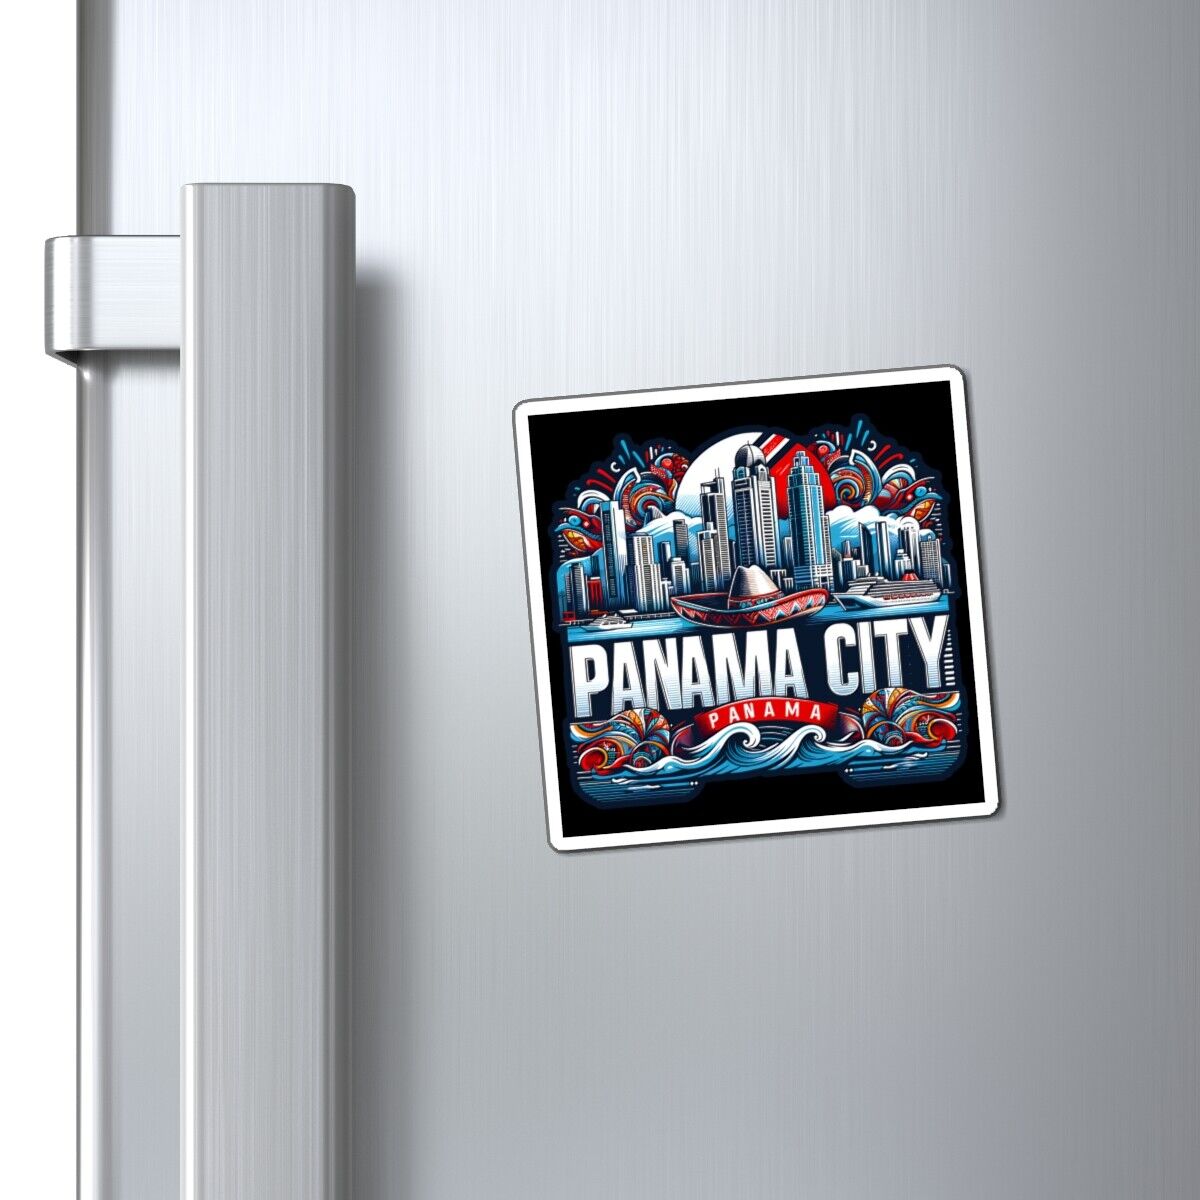 Panama City Panama Magnet